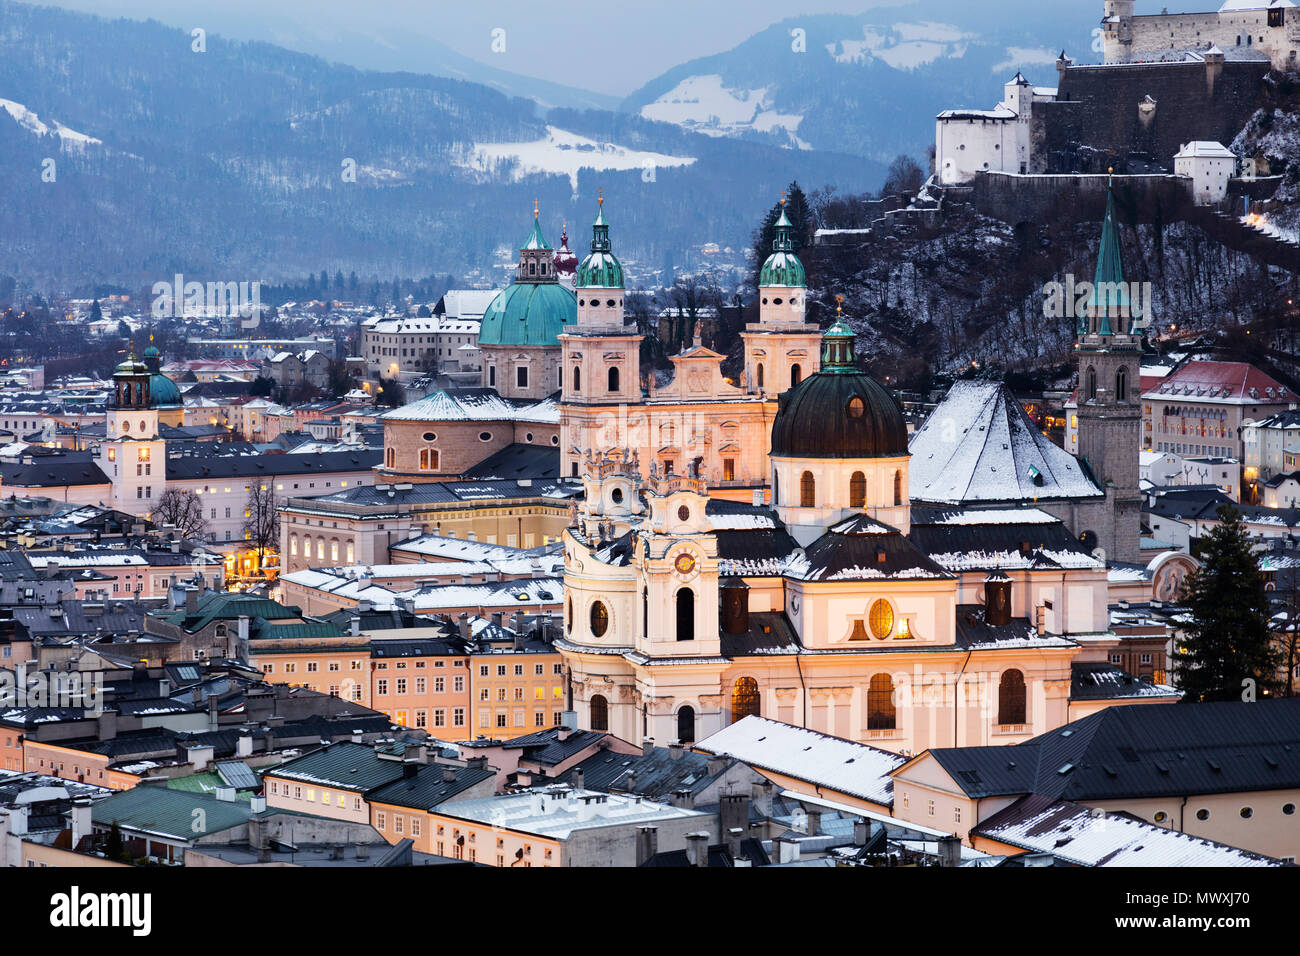 Vue sur la vieille ville, site du patrimoine mondial de l'UNESCO, la cathédrale de Salzbourg et à la brunante, Salzburg, Autriche, Europe Banque D'Images